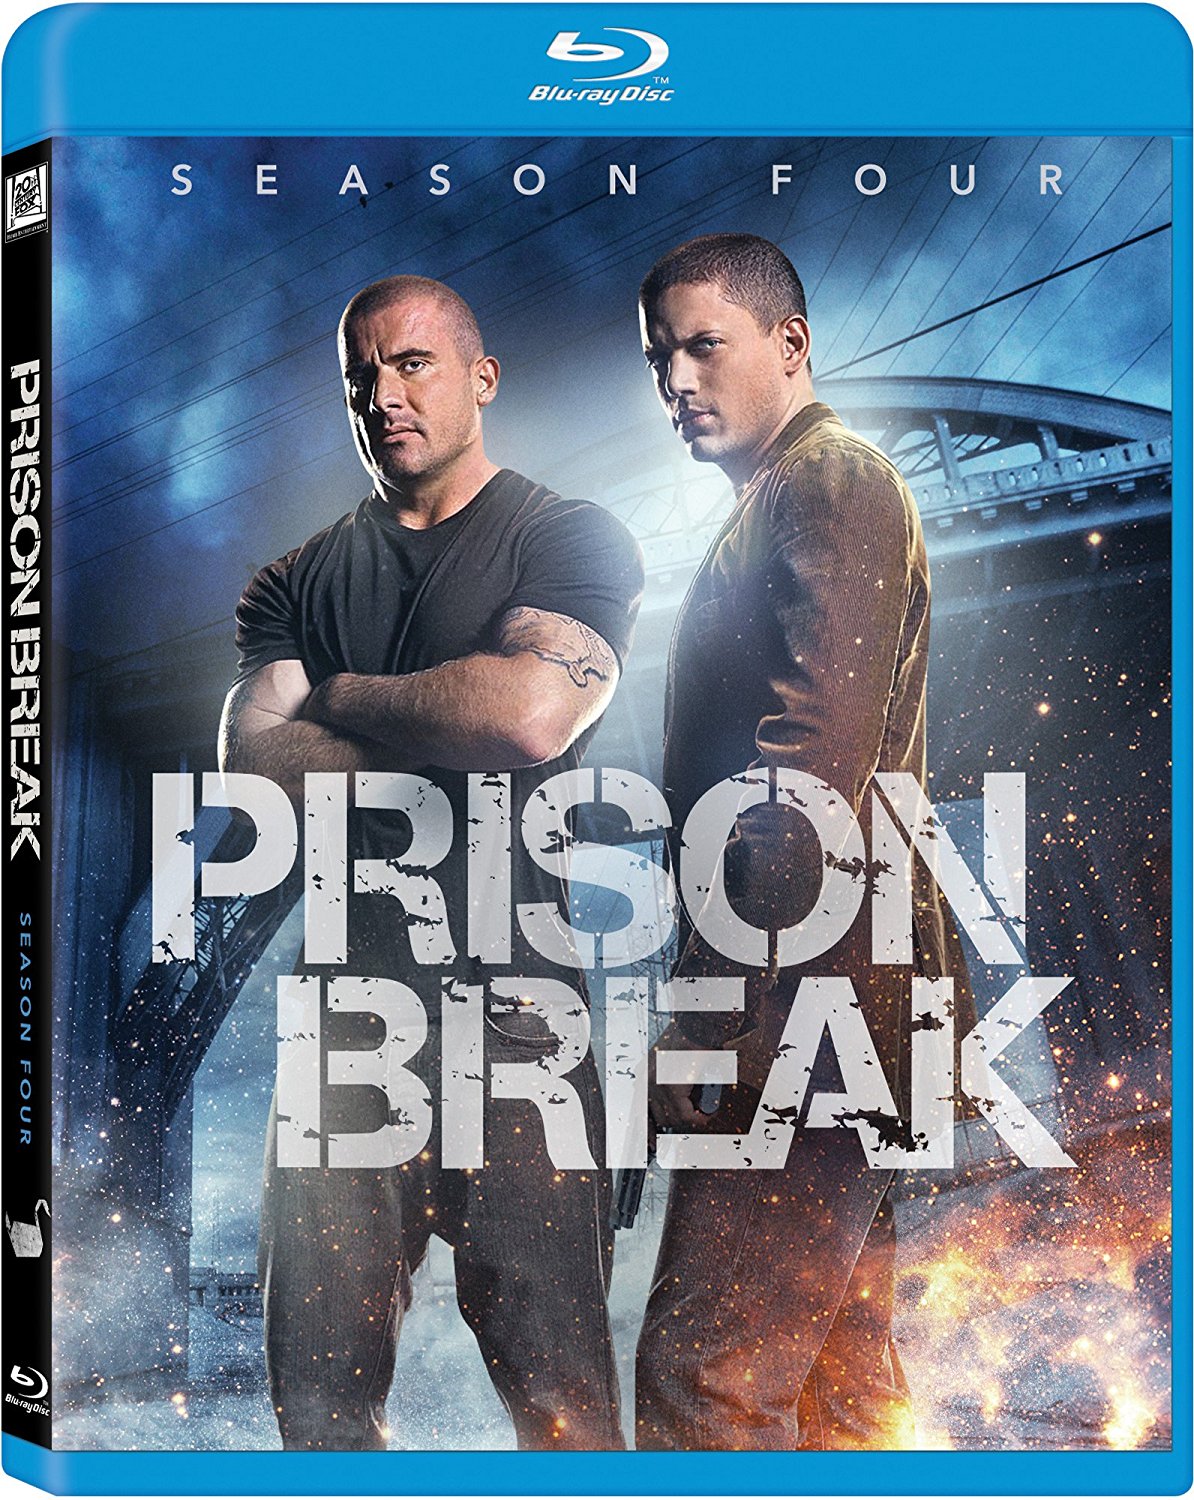 Prison break bluray 720p collection